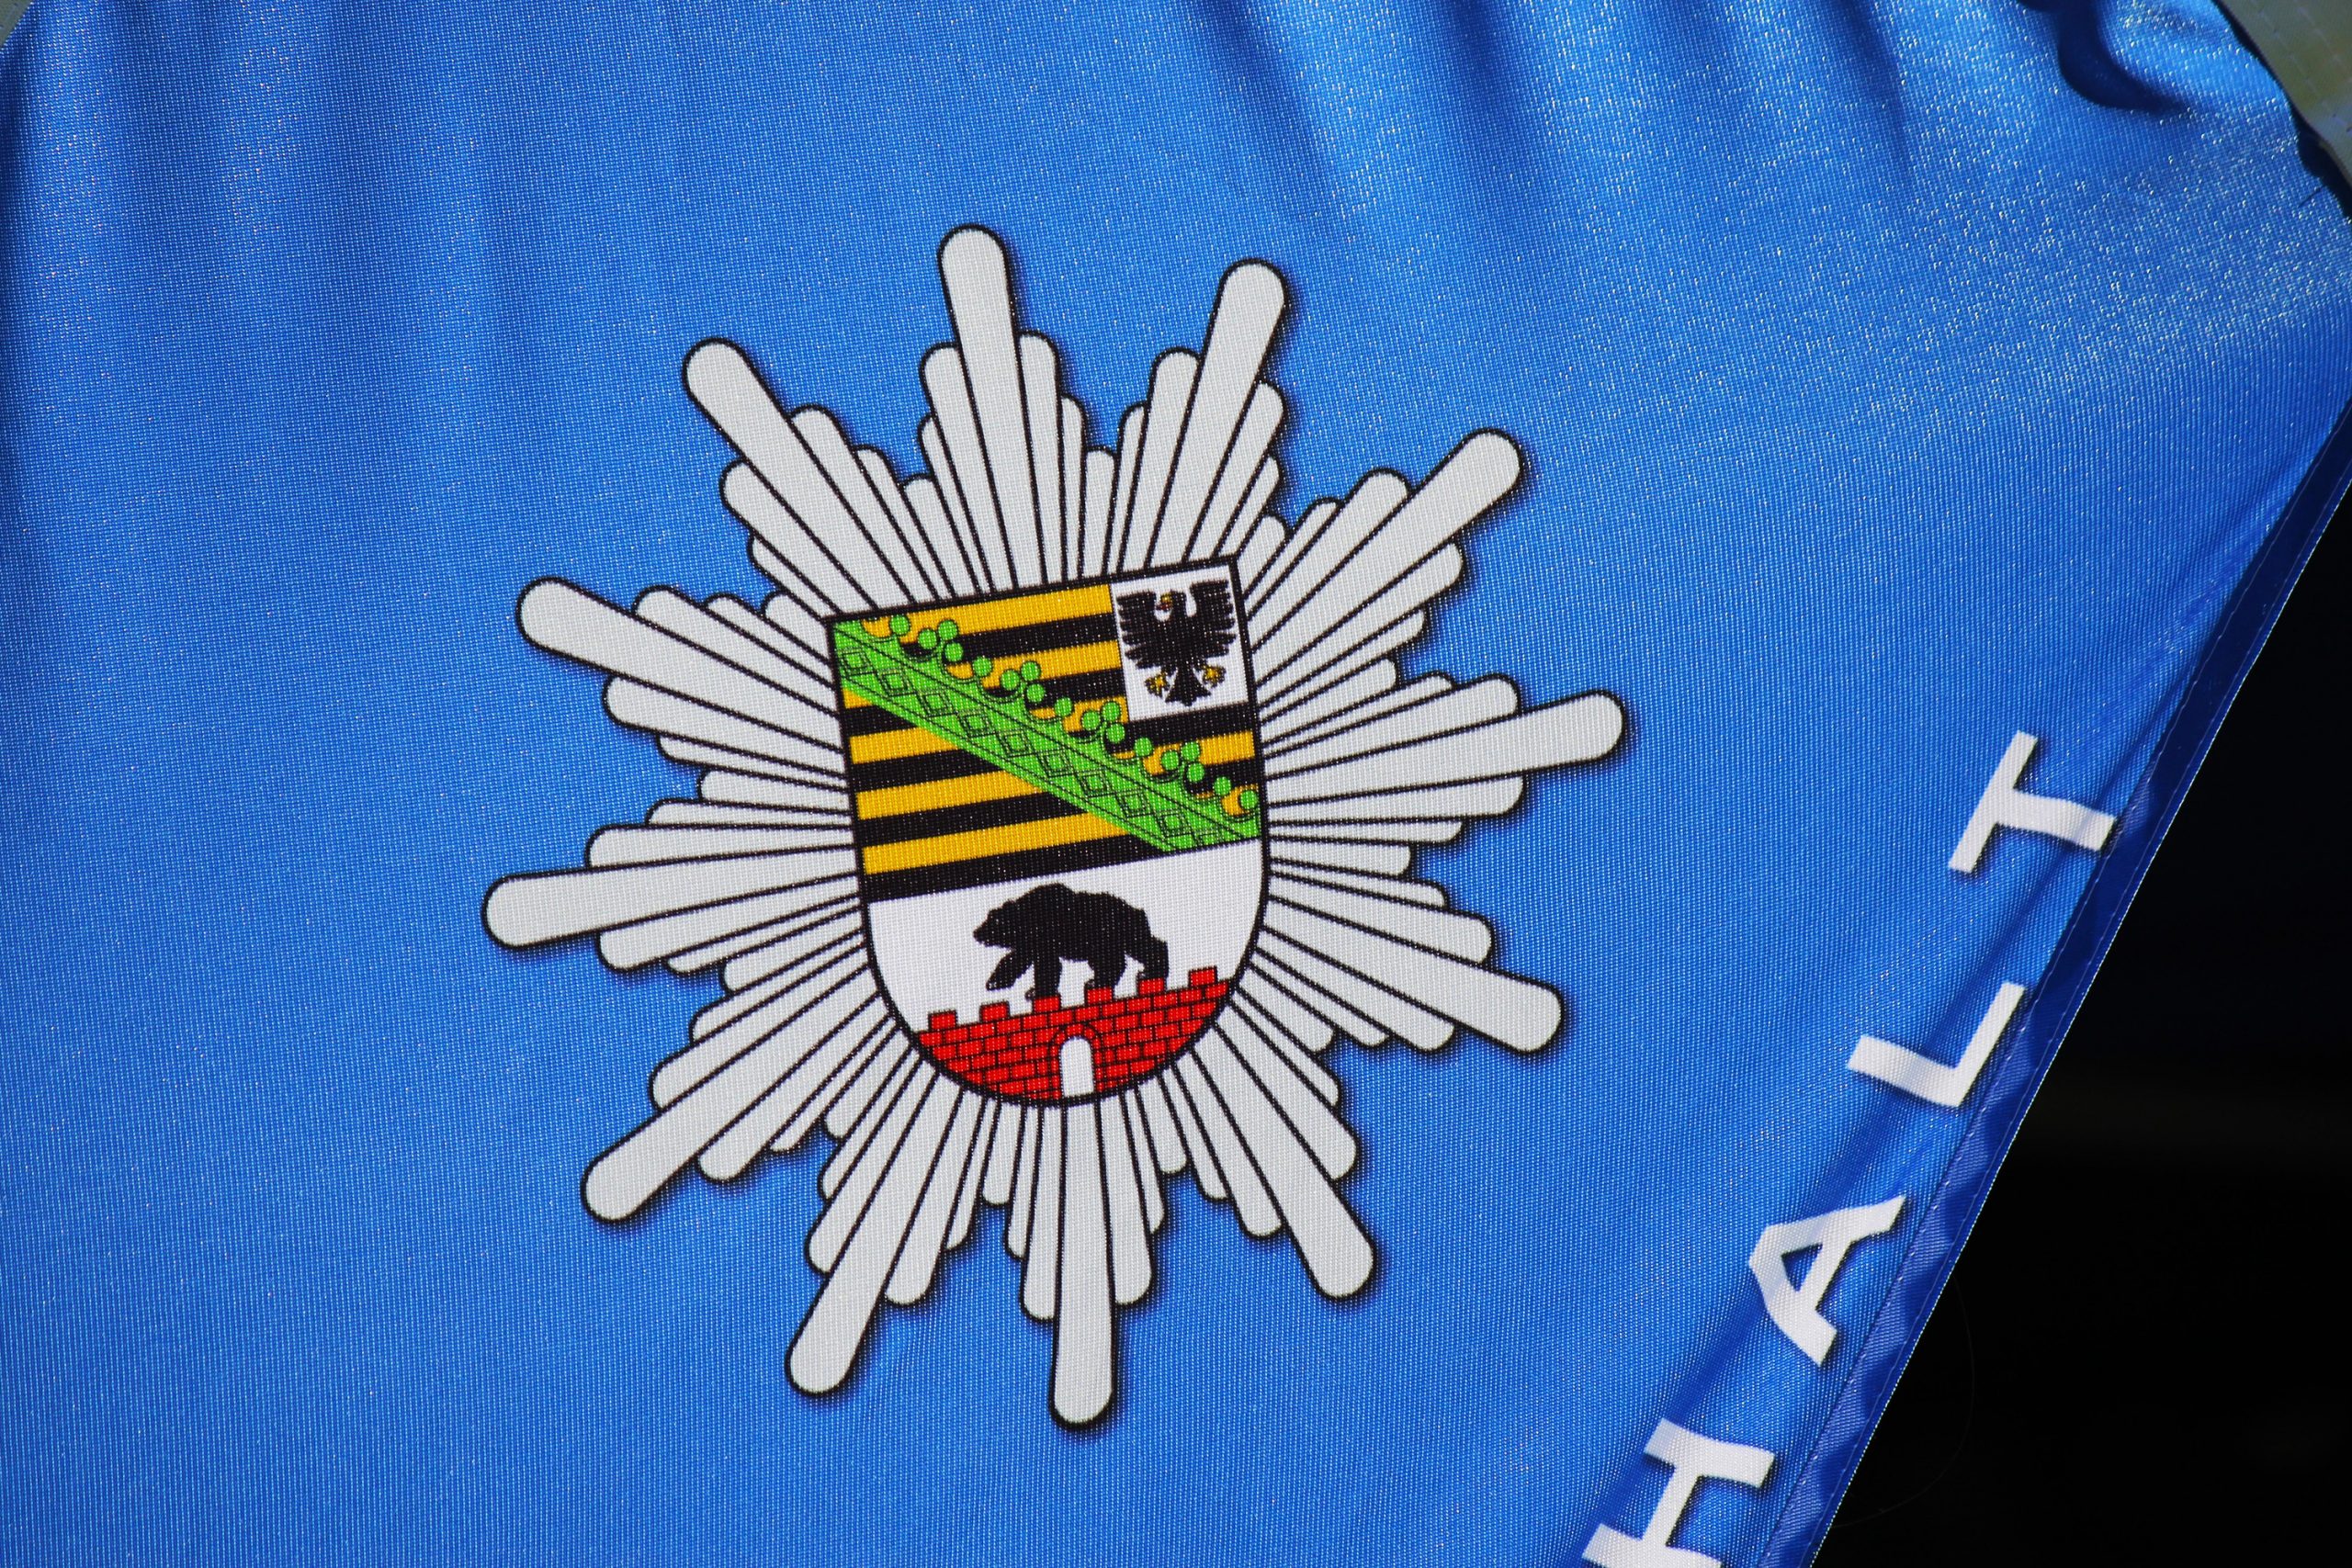 Polizei Sachsen-Anhalt